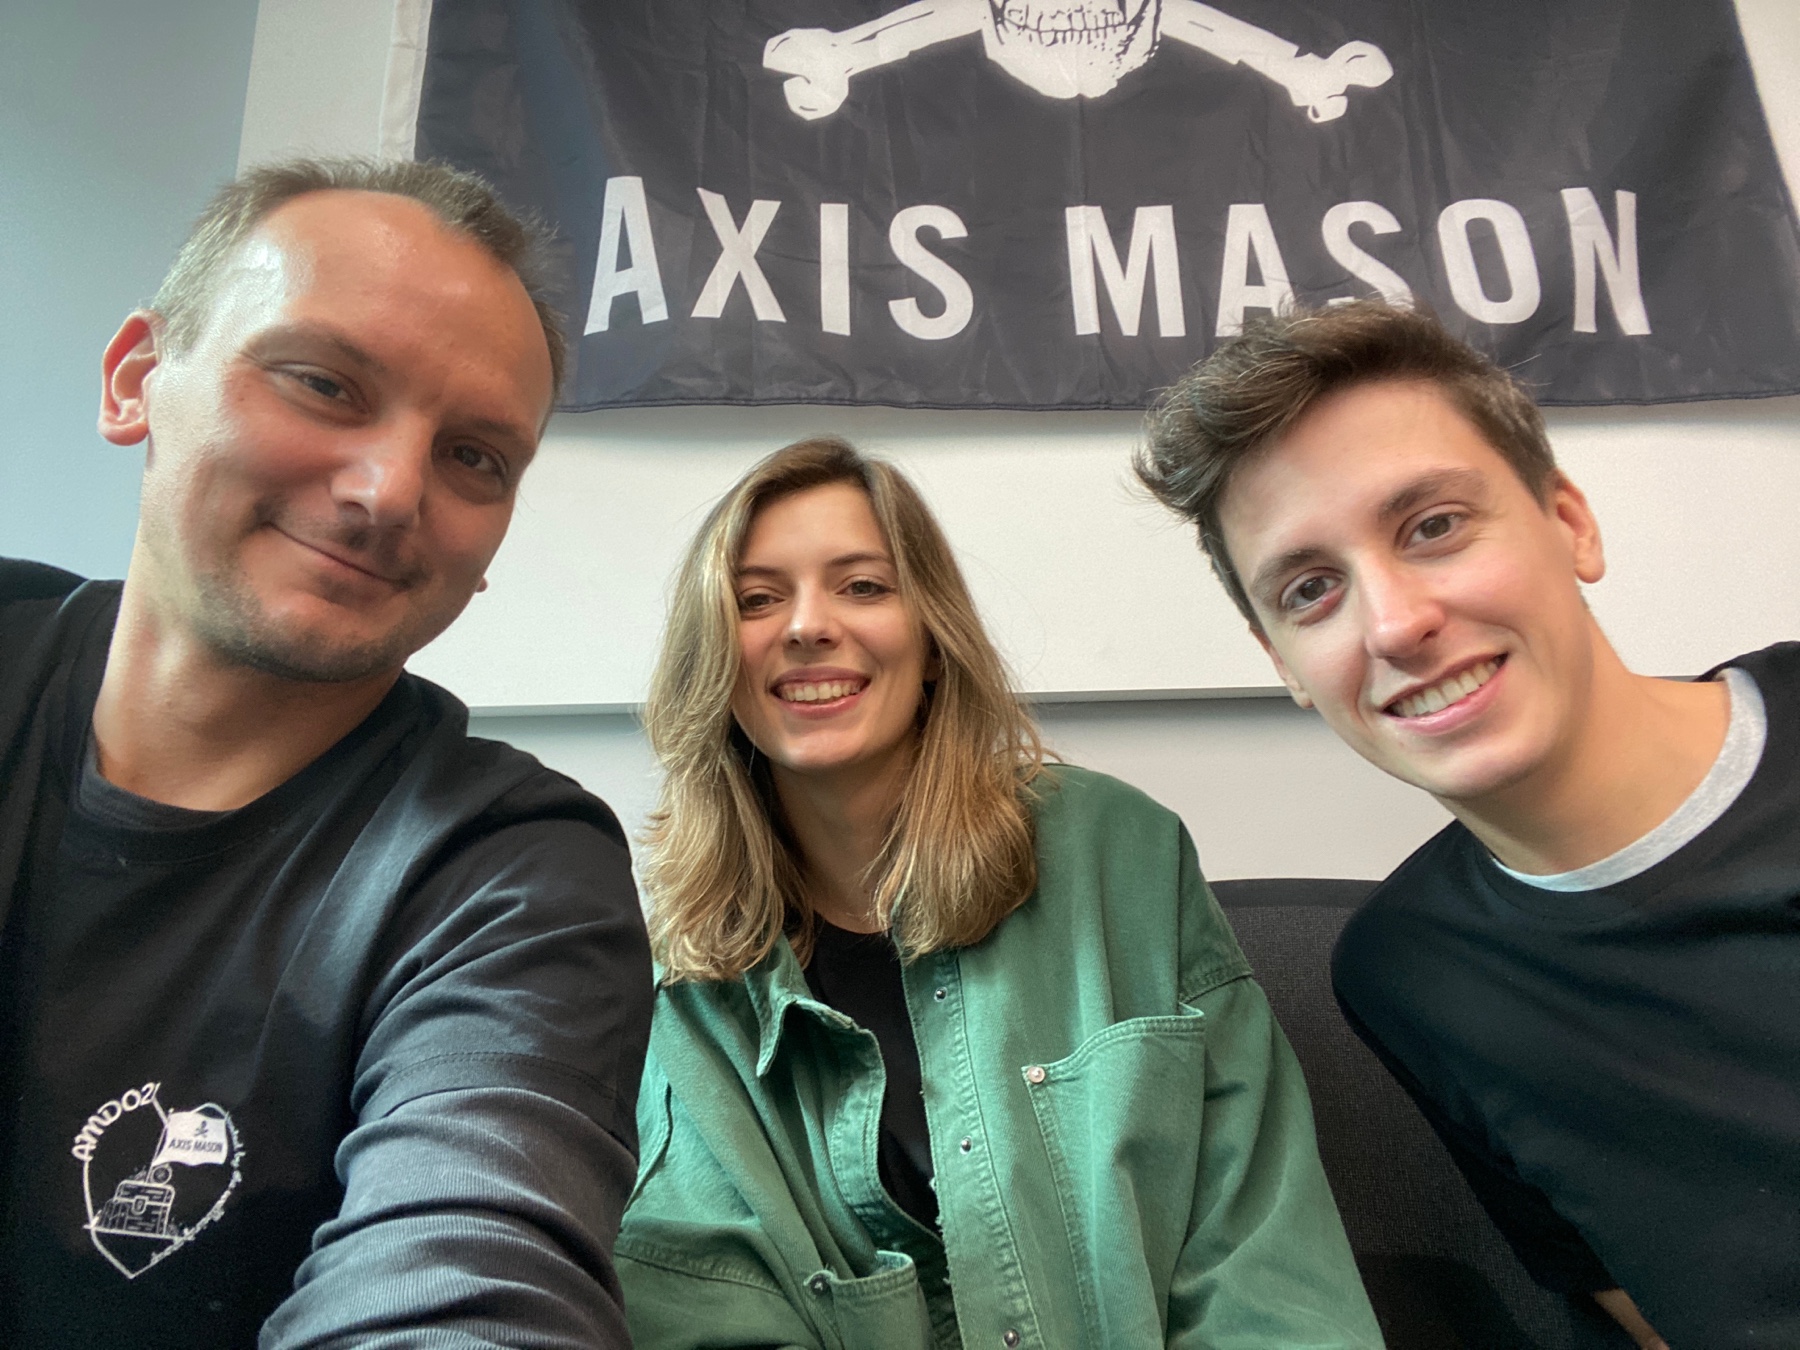 AXIS MASON DAY OUT 2021 | Axis Mason